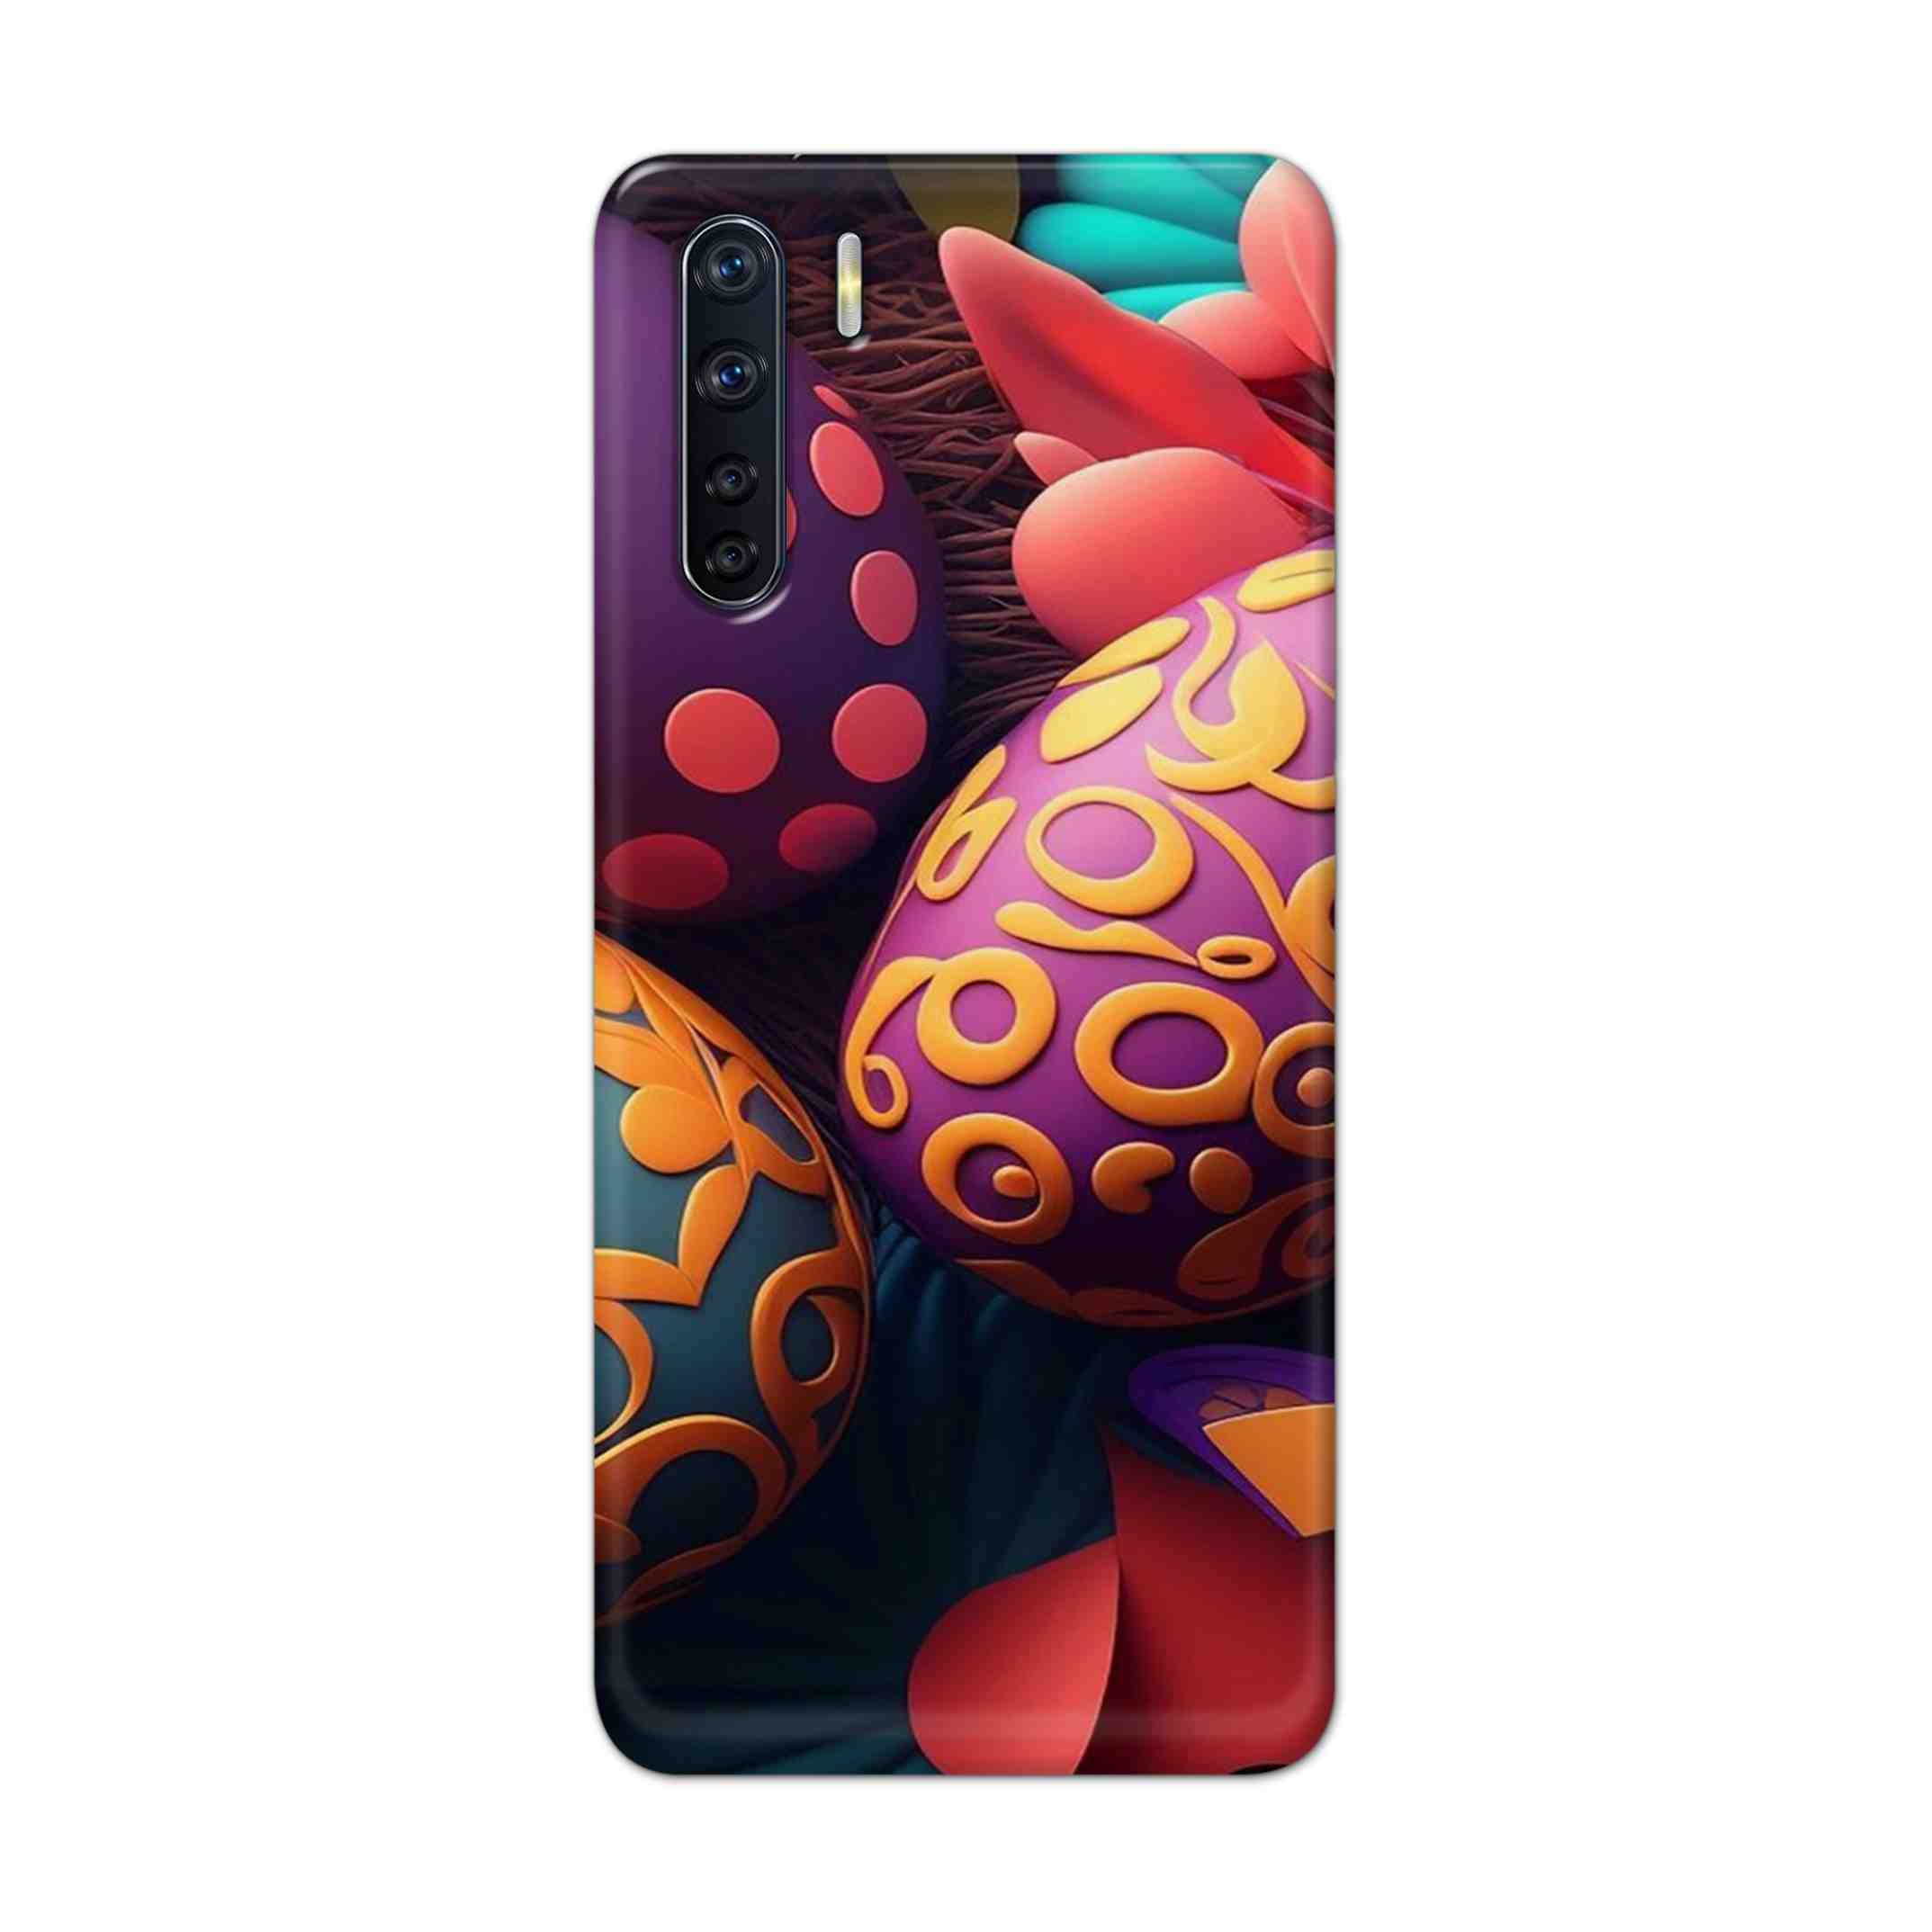 Buy Easter Egg Hard Back Mobile Phone Case Cover For OPPO F15 Online